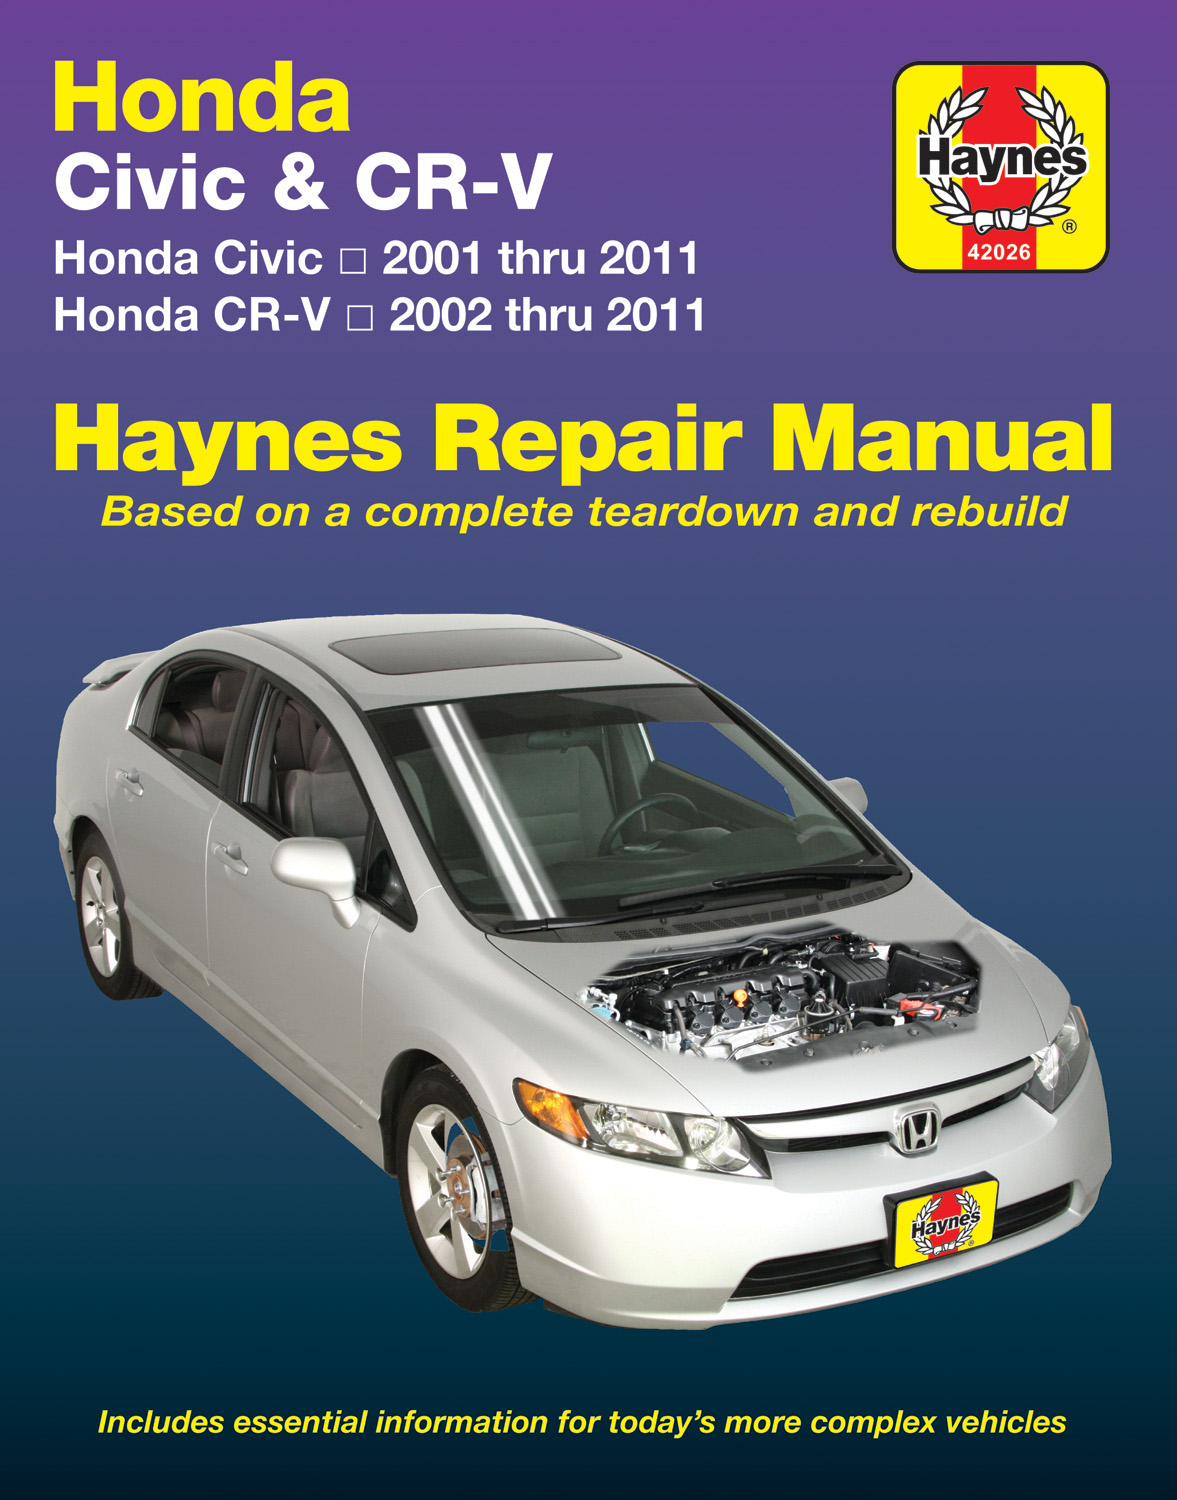 2004 honda civic repair manual free download pdf